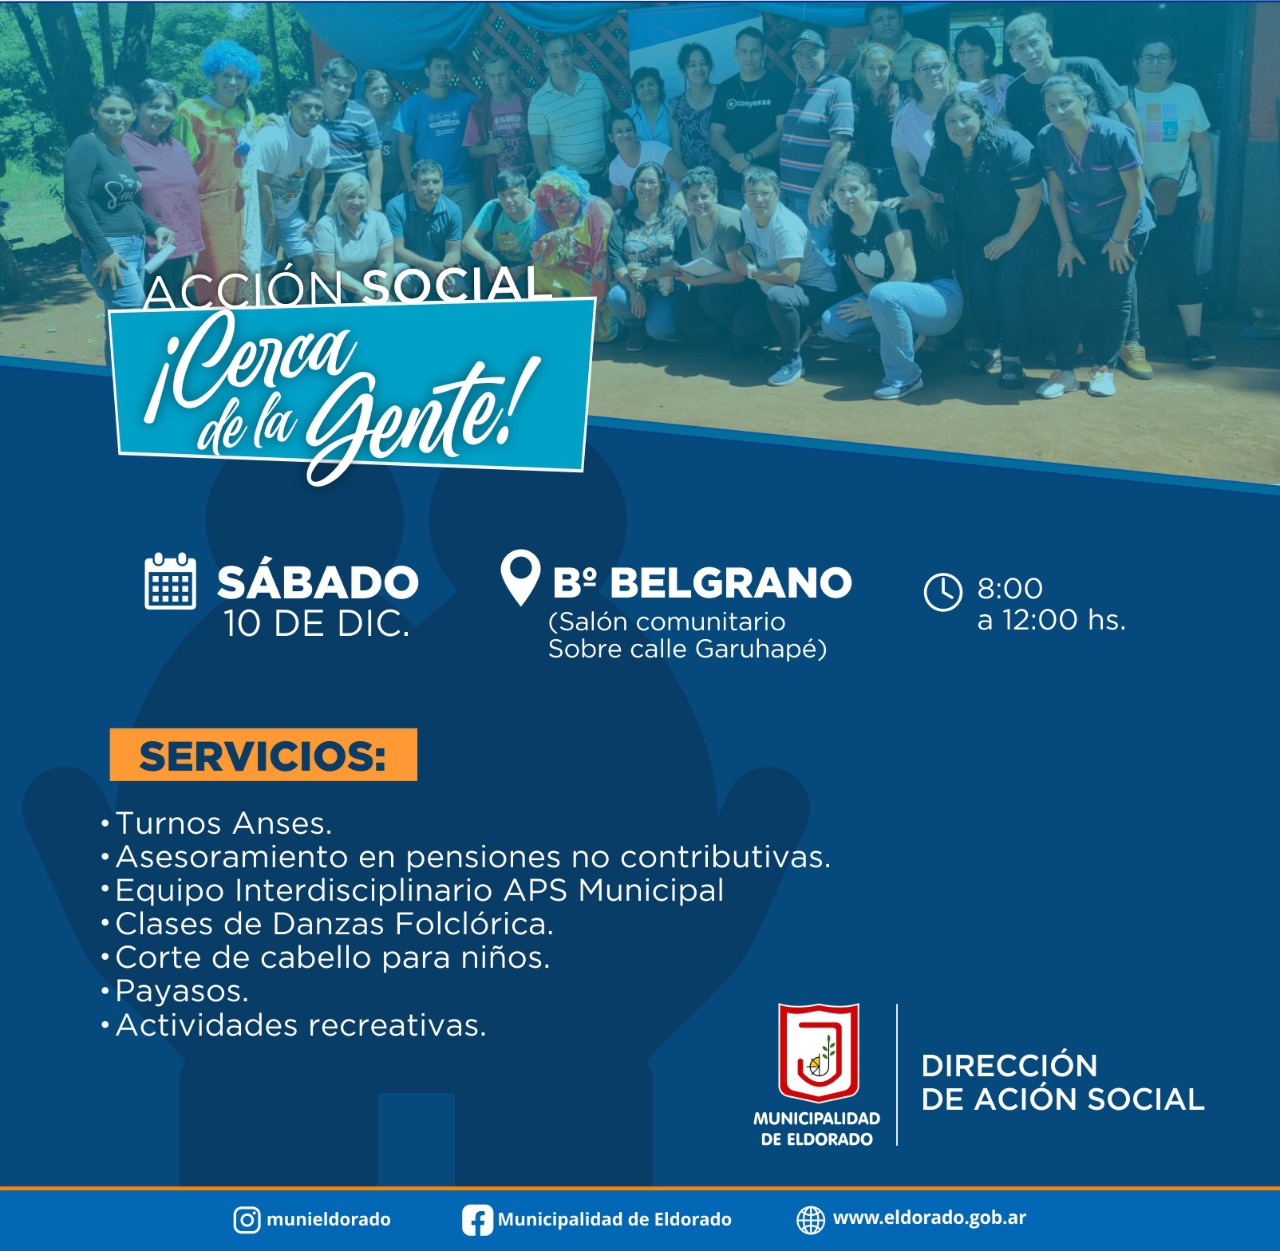 Habrá atención integral de Acción Social este sábado en el Barrio Belgrano